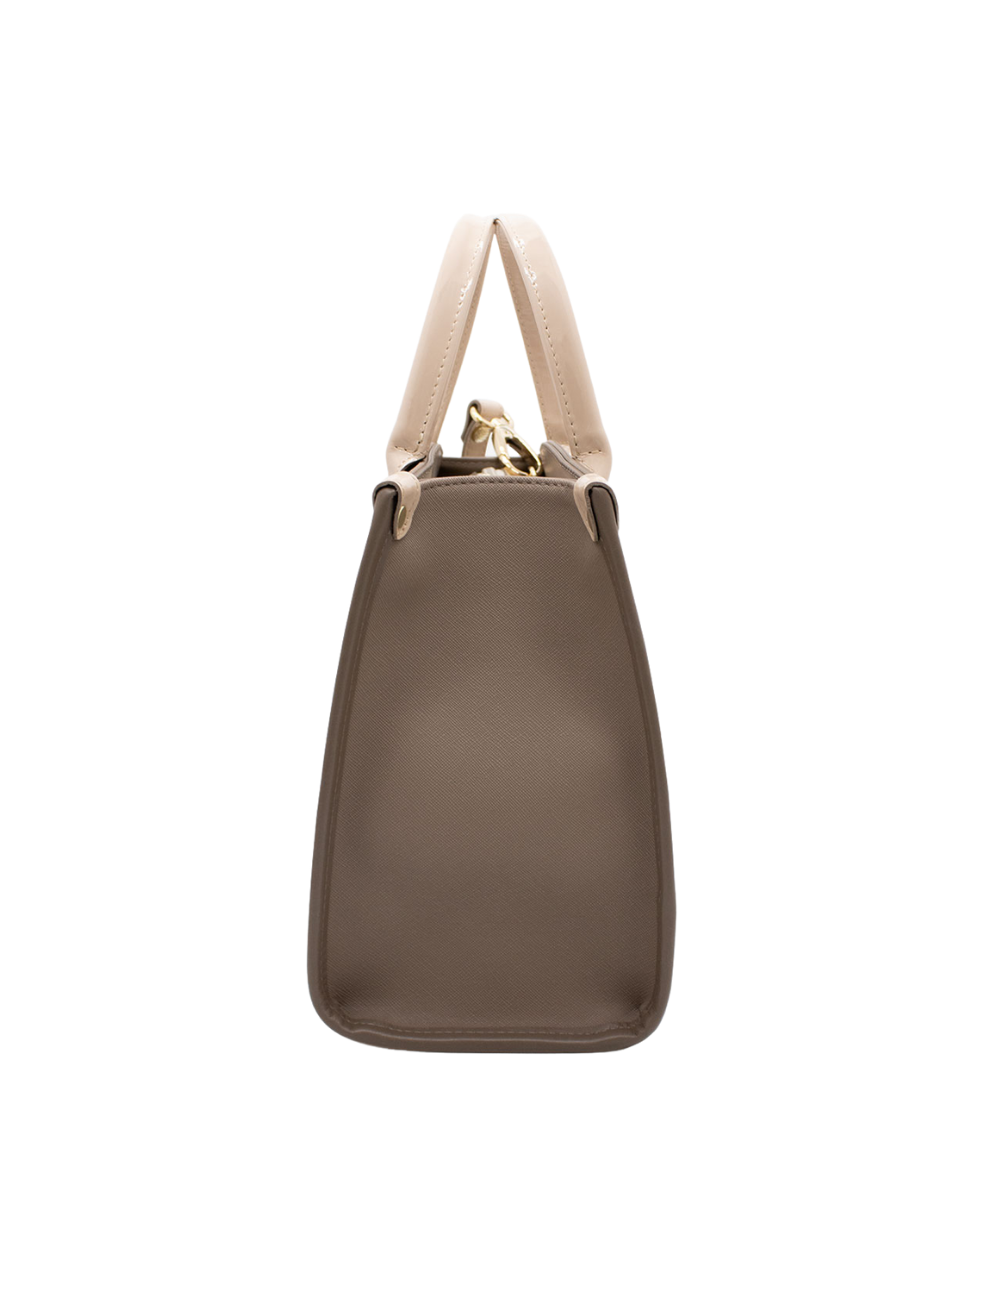 Cavalinho Signature Handbag SKU 18740480.31 #color_sand / beige